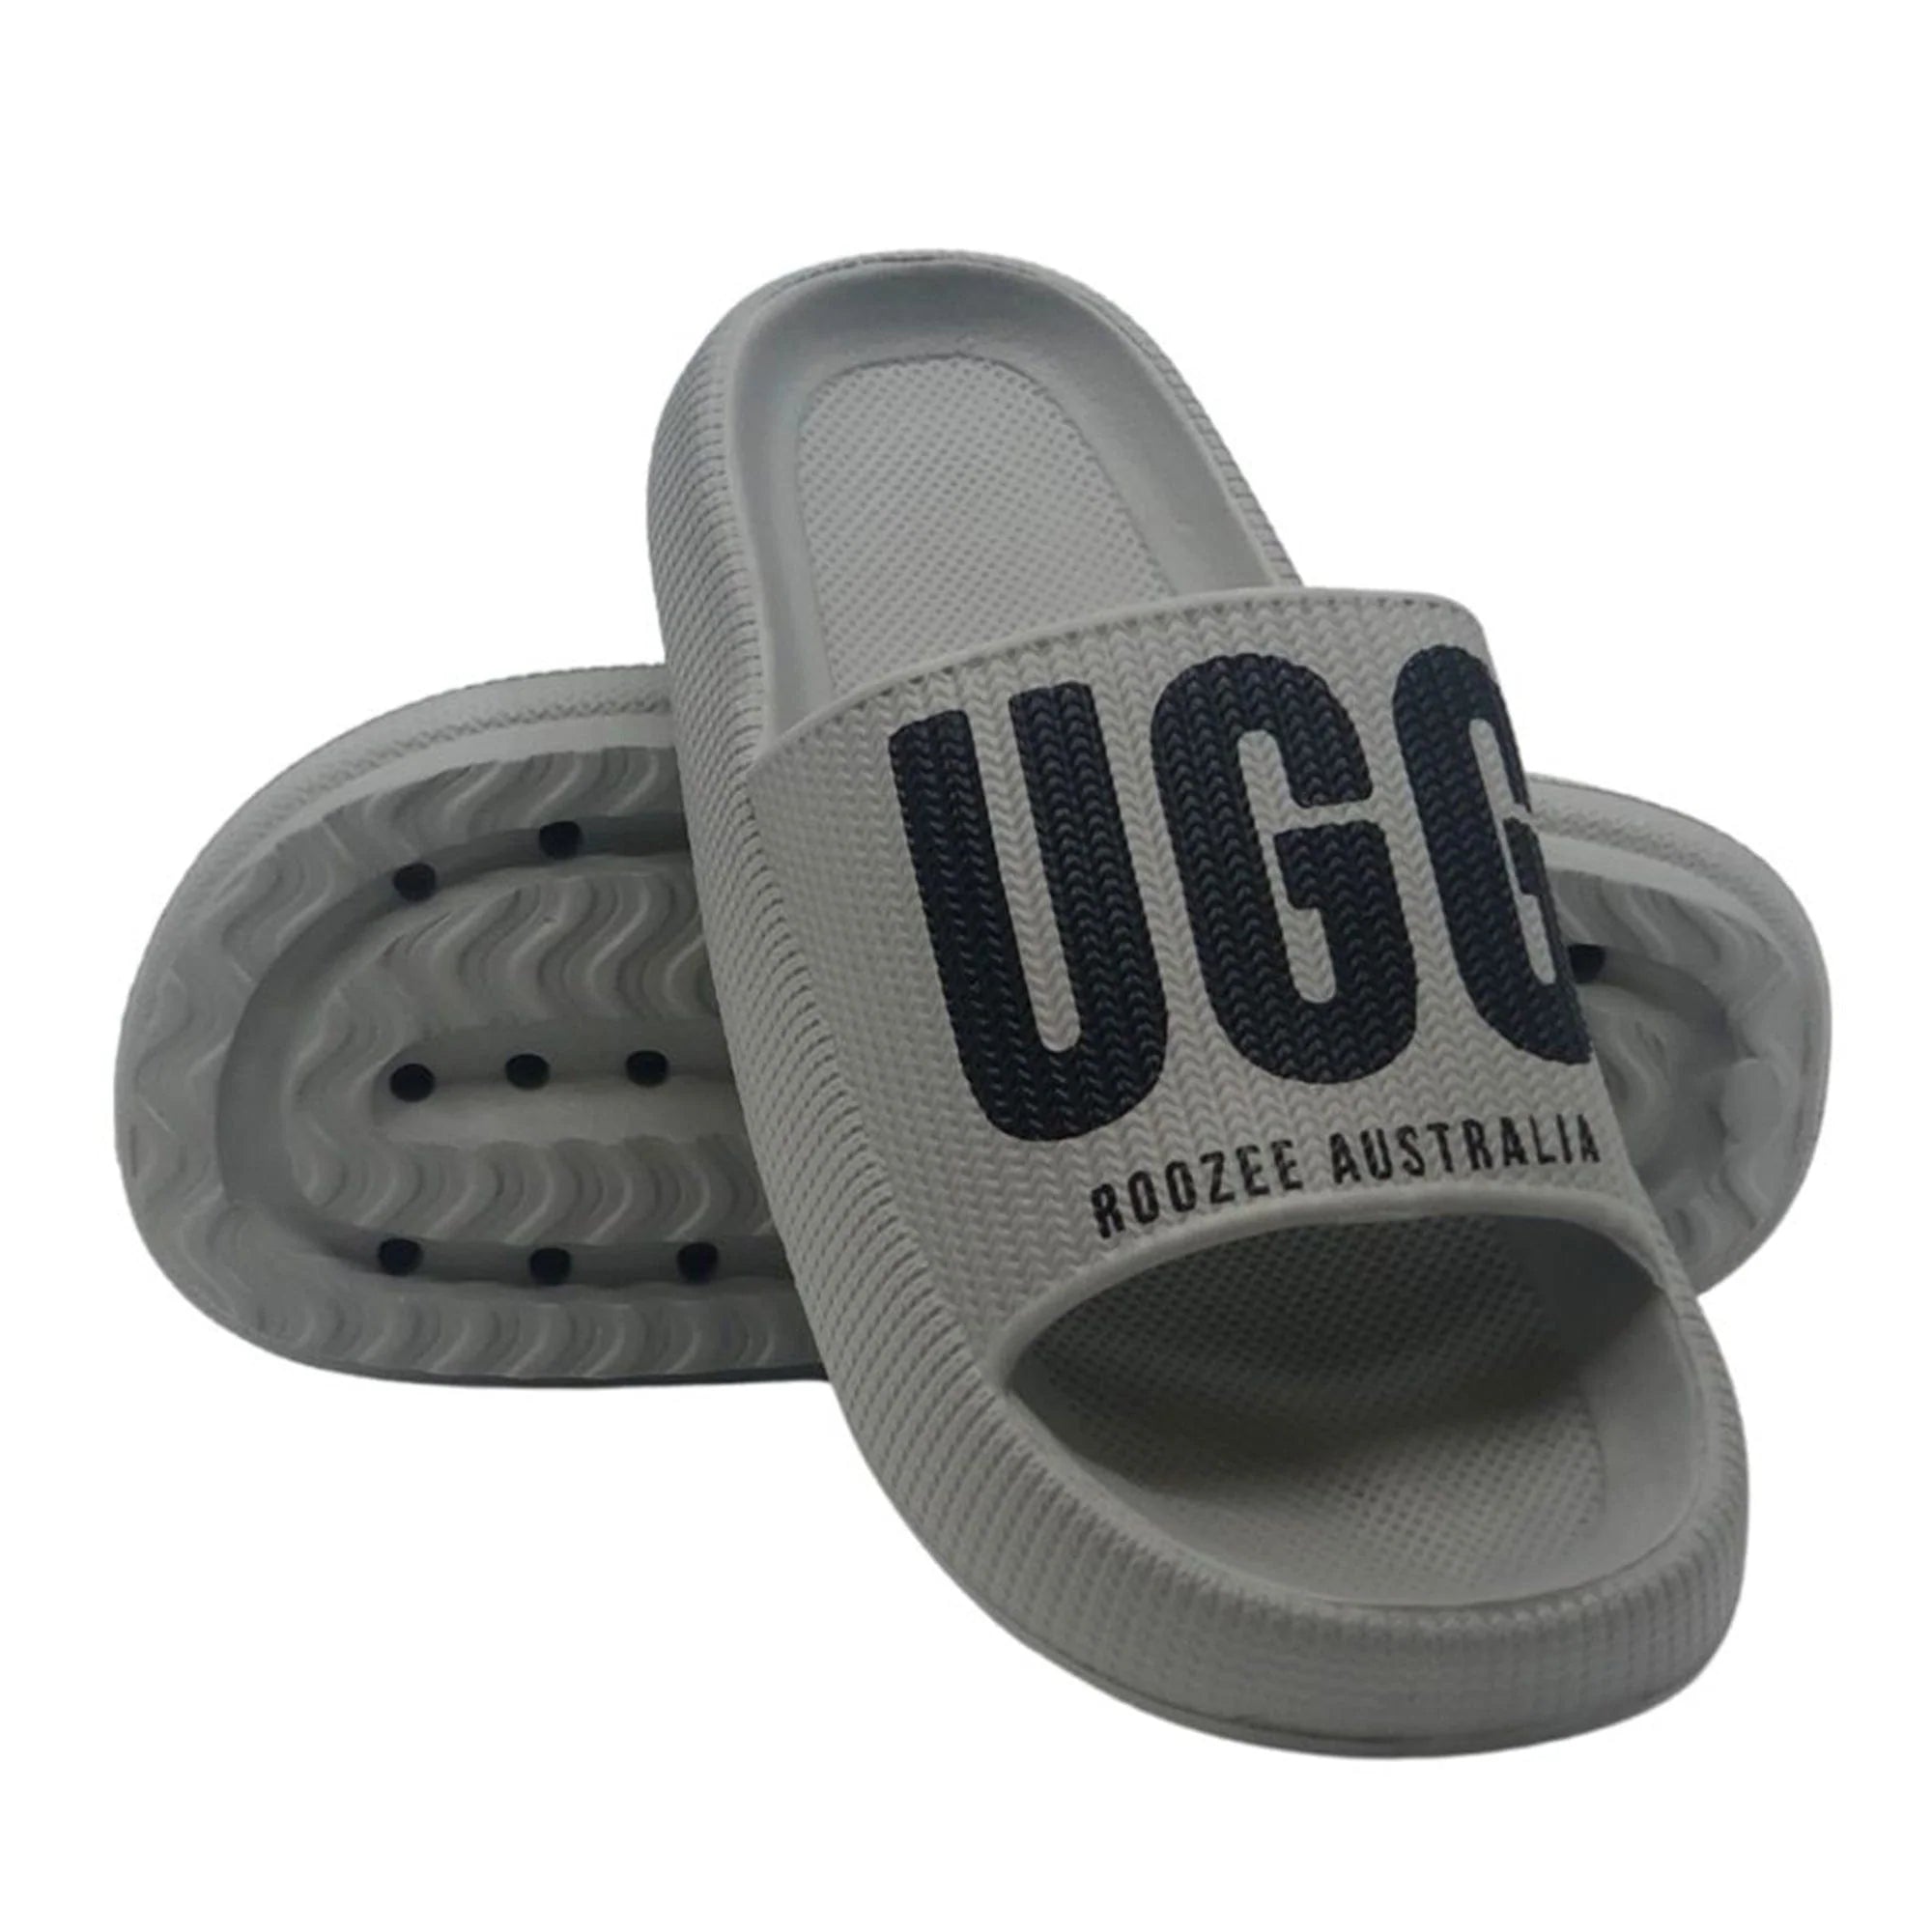  - Premium Summer Slides - Original UGG Australia Classic